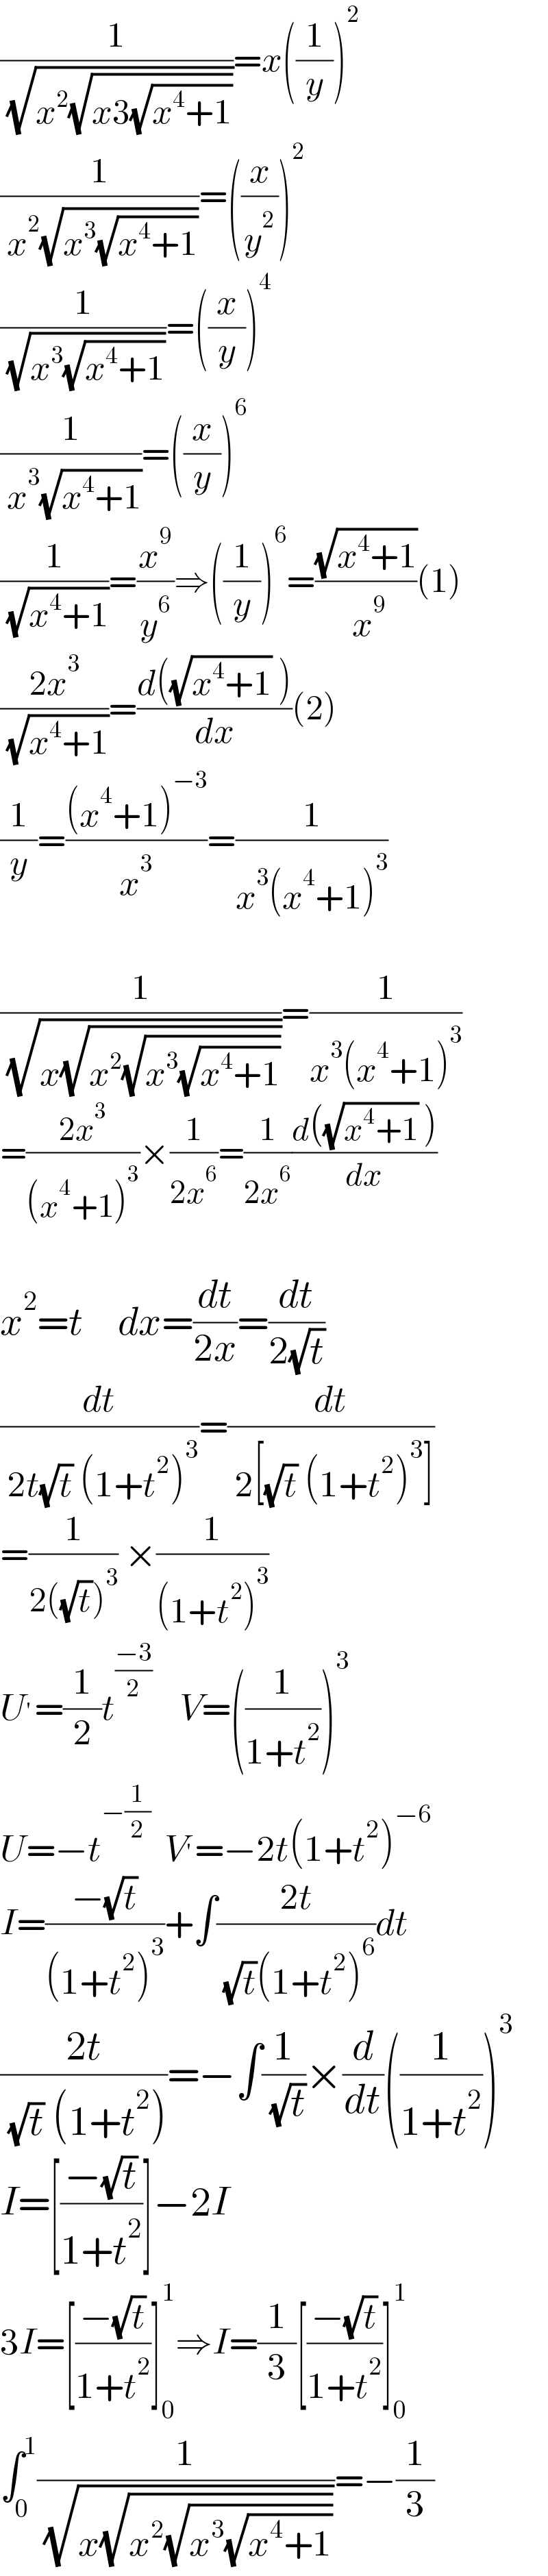 (1/( (√(x^2 (√(x3(√(x^4 +1))))))))=x((1/y))^2   (1/( x^2 (√(x^3 (√(x^4 +1))))))=((x/y^2 ))^2   (1/( (√(x^3 (√(x^4 +1))))))=((x/y))^4   (1/( x^3 (√(x^4 +1))))=((x/y))^6   (1/( (√(x^4 +1))))=(x^9 /y^6 )⇒((1/y))^6 =((√(x^4 +1))/( x^9 ))(1)  ((2x^3 )/( (√(x^4 +1))))=((d((√(x^4 +1)) ))/dx)(2)  (1/y)=(((x^4 +1)^(−3) )/x^3 )=(1/(x^3 (x^4 +1)^3 ))    (1/( (√(x(√(x^2 (√(x^3 (√(x^4 +1))))))))))=(1/(x^3 (x^4 +1)^3 ))  =((2x^3 )/((x^4 +1)^3 ))×(1/(2x^6 ))=(1/(2x^6 ))((d((√(x^4 +1)) ))/dx)    x^2 =t     dx=(dt/(2x))=(dt/(2(√t)))  (dt/( 2t(√t) (1+t^2 )^3 ))=(dt/( 2[(√t) (1+t^2 )^3 ]))   =(1/(2((√t))^3 )) ×(1/((1+t^2 )^3 ))  U^′ =(1/2)t^((−3)/2)     V=((1/(1+t^2 )))^3   U=−t^(−(1/2))   V^′ =−2t(1+t^2 )^(−6)   I=((−(√t))/((1+t^2 )^3 ))+∫((2t)/( (√t)(1+t^2 )^6 ))dt  ((2t)/( (√t) (1+t^2 )))=−∫(1/( (√t)))×(d/dt)((1/(1+t^2 )))^3   I=[((−(√t))/(1+t^2 ))]−2I  3I=[((−(√t))/(1+t^2 ))]_0 ^1 ⇒I=(1/3)[((−(√t))/(1+t^2 ))]_0 ^1      ∫_0 ^1 (1/( (√(x(√(x^2 (√(x^3 (√(x^4 +1))))))))))=−(1/3)  